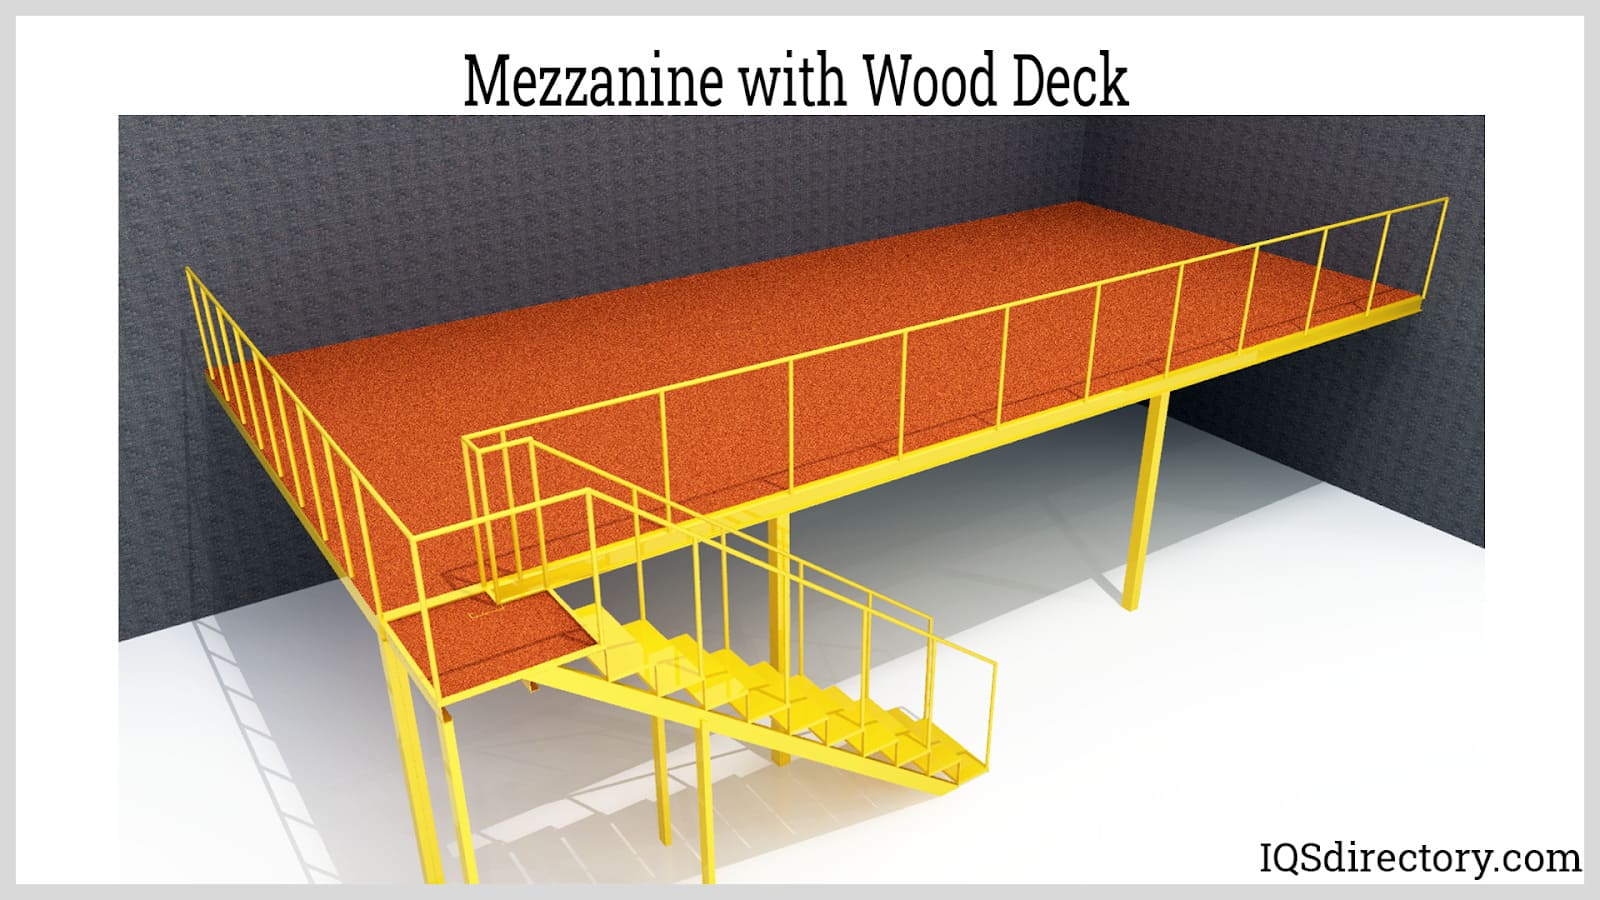 Mezzanine with Wood Deck